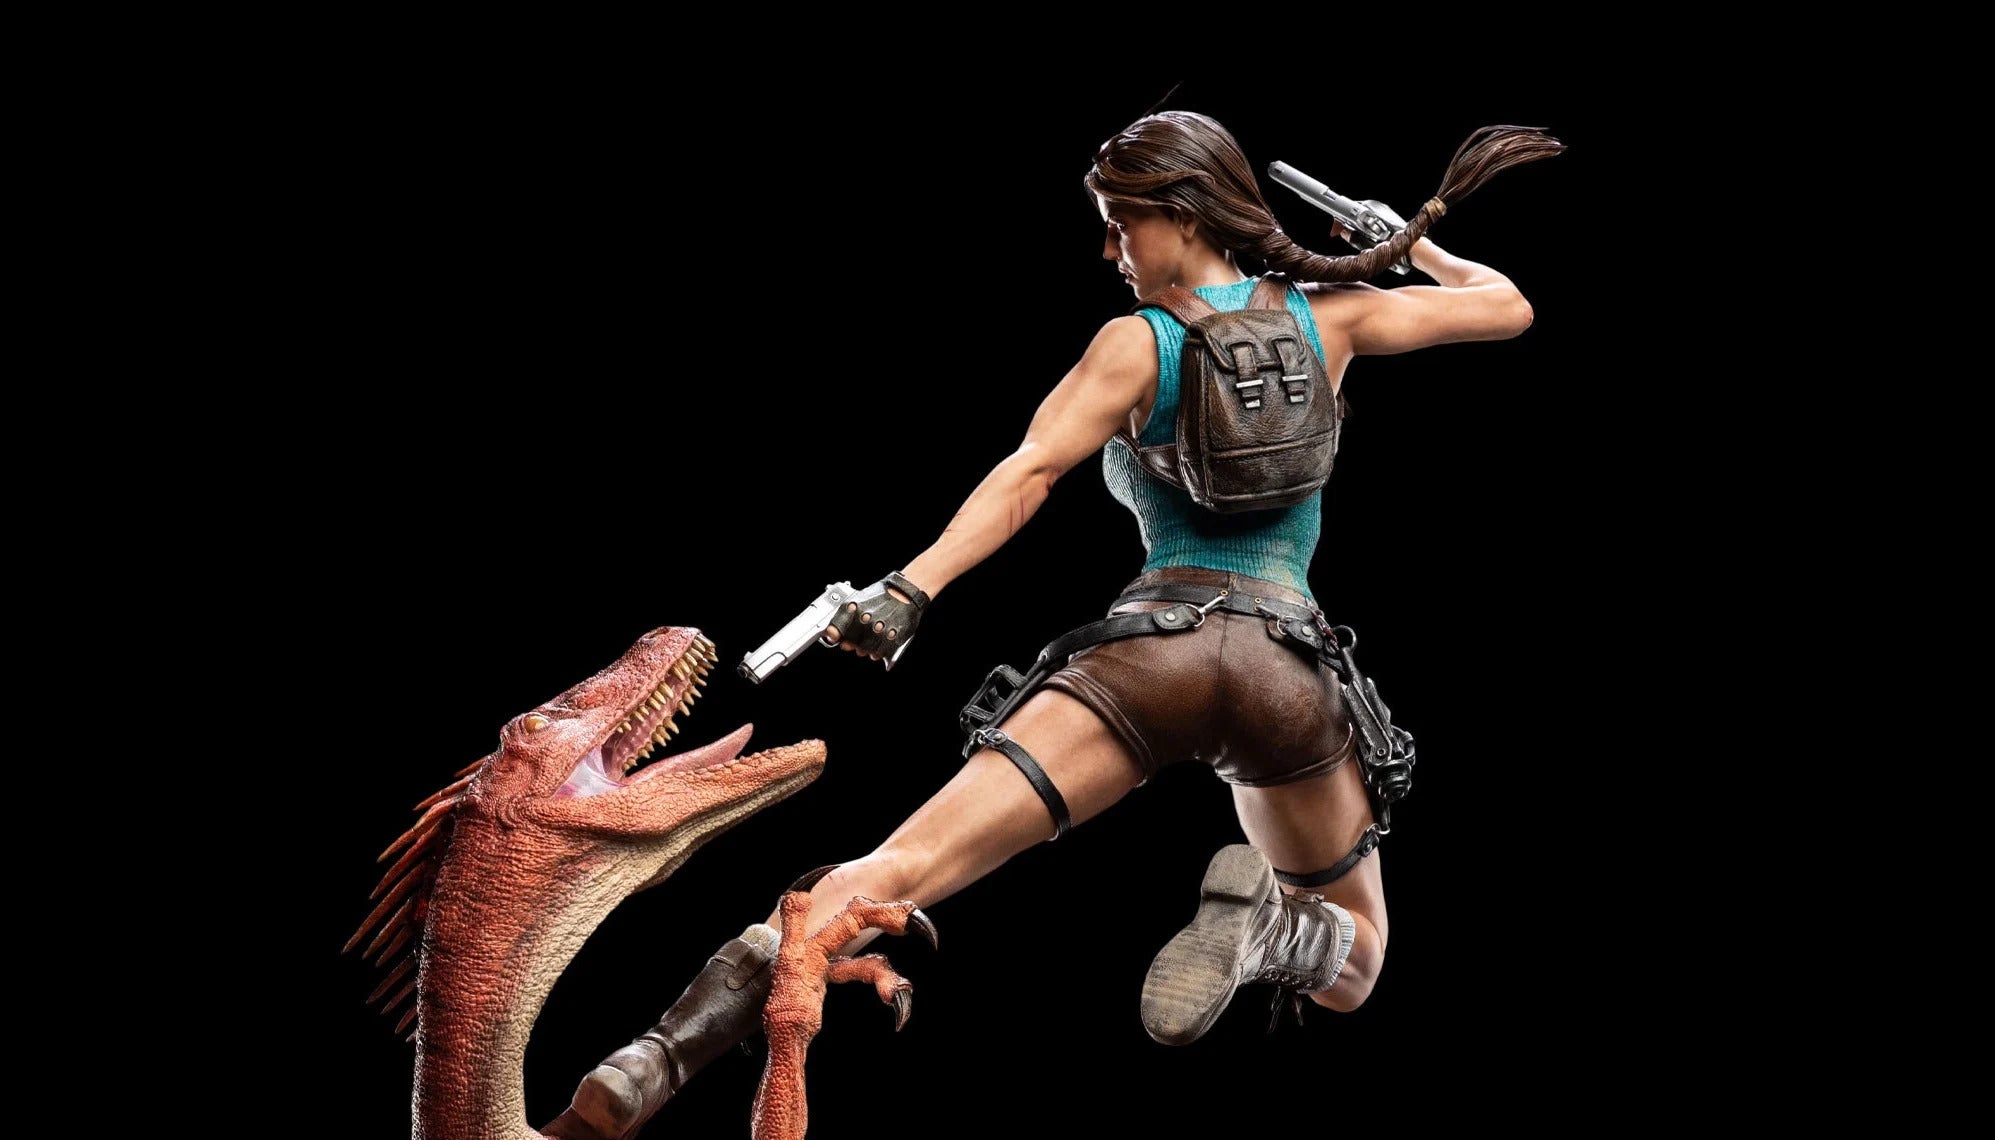 Bilder zu Lara Croft fürs Regal - Weta Workshop erschafft limitierte Figur für 1.500 Dollar